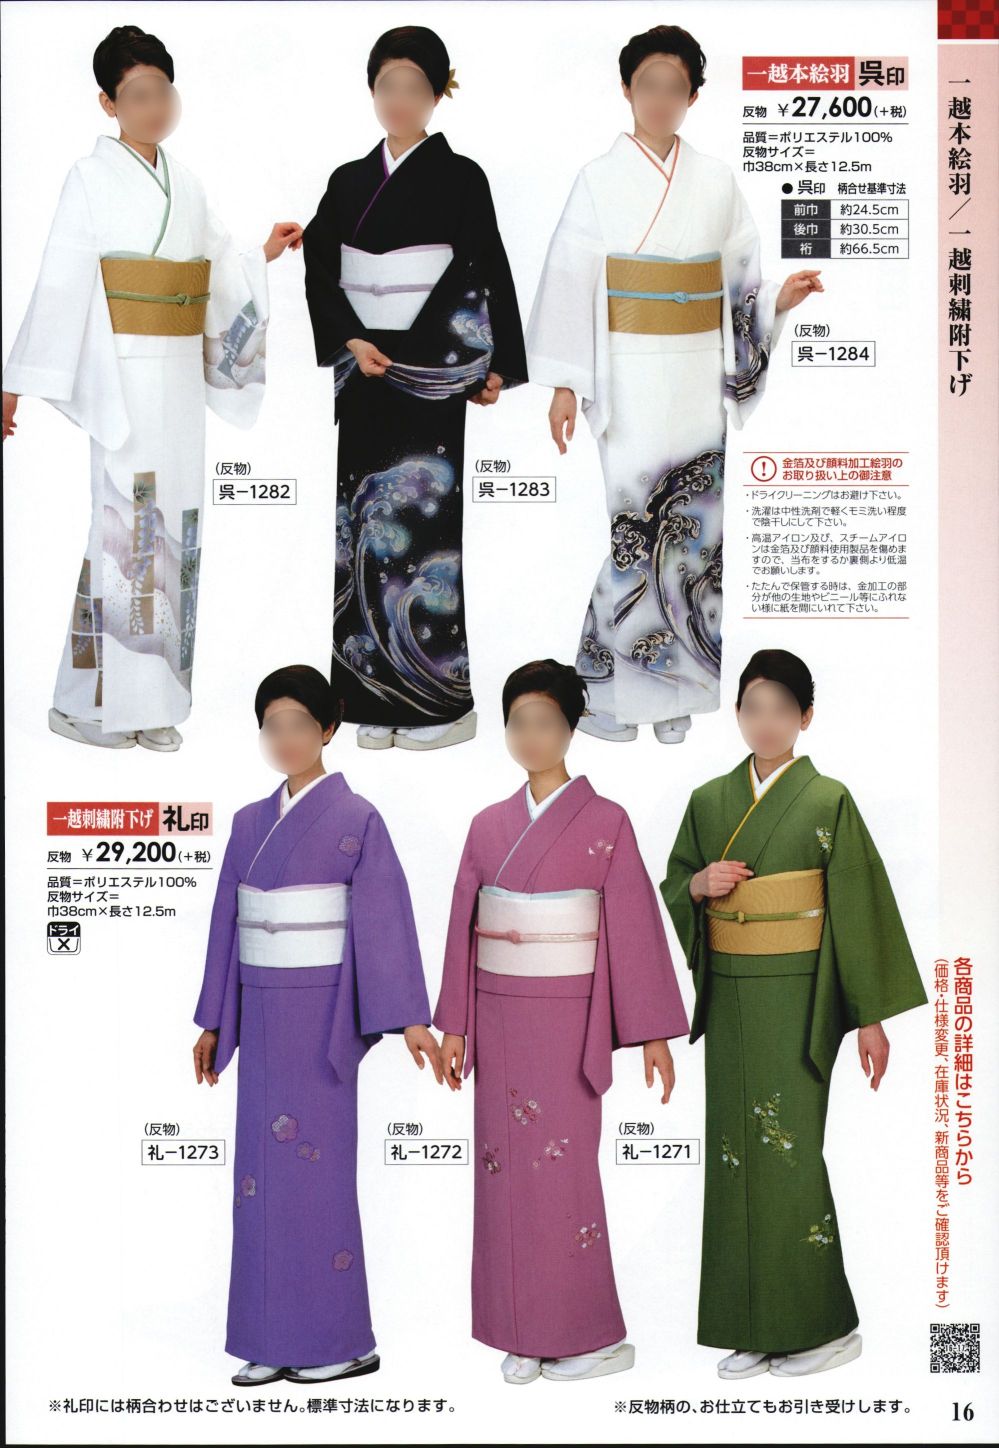 ユニフォーム1.COM 祭り用品jp 踊り衣装・着物 日本の踊り 踊り衣装